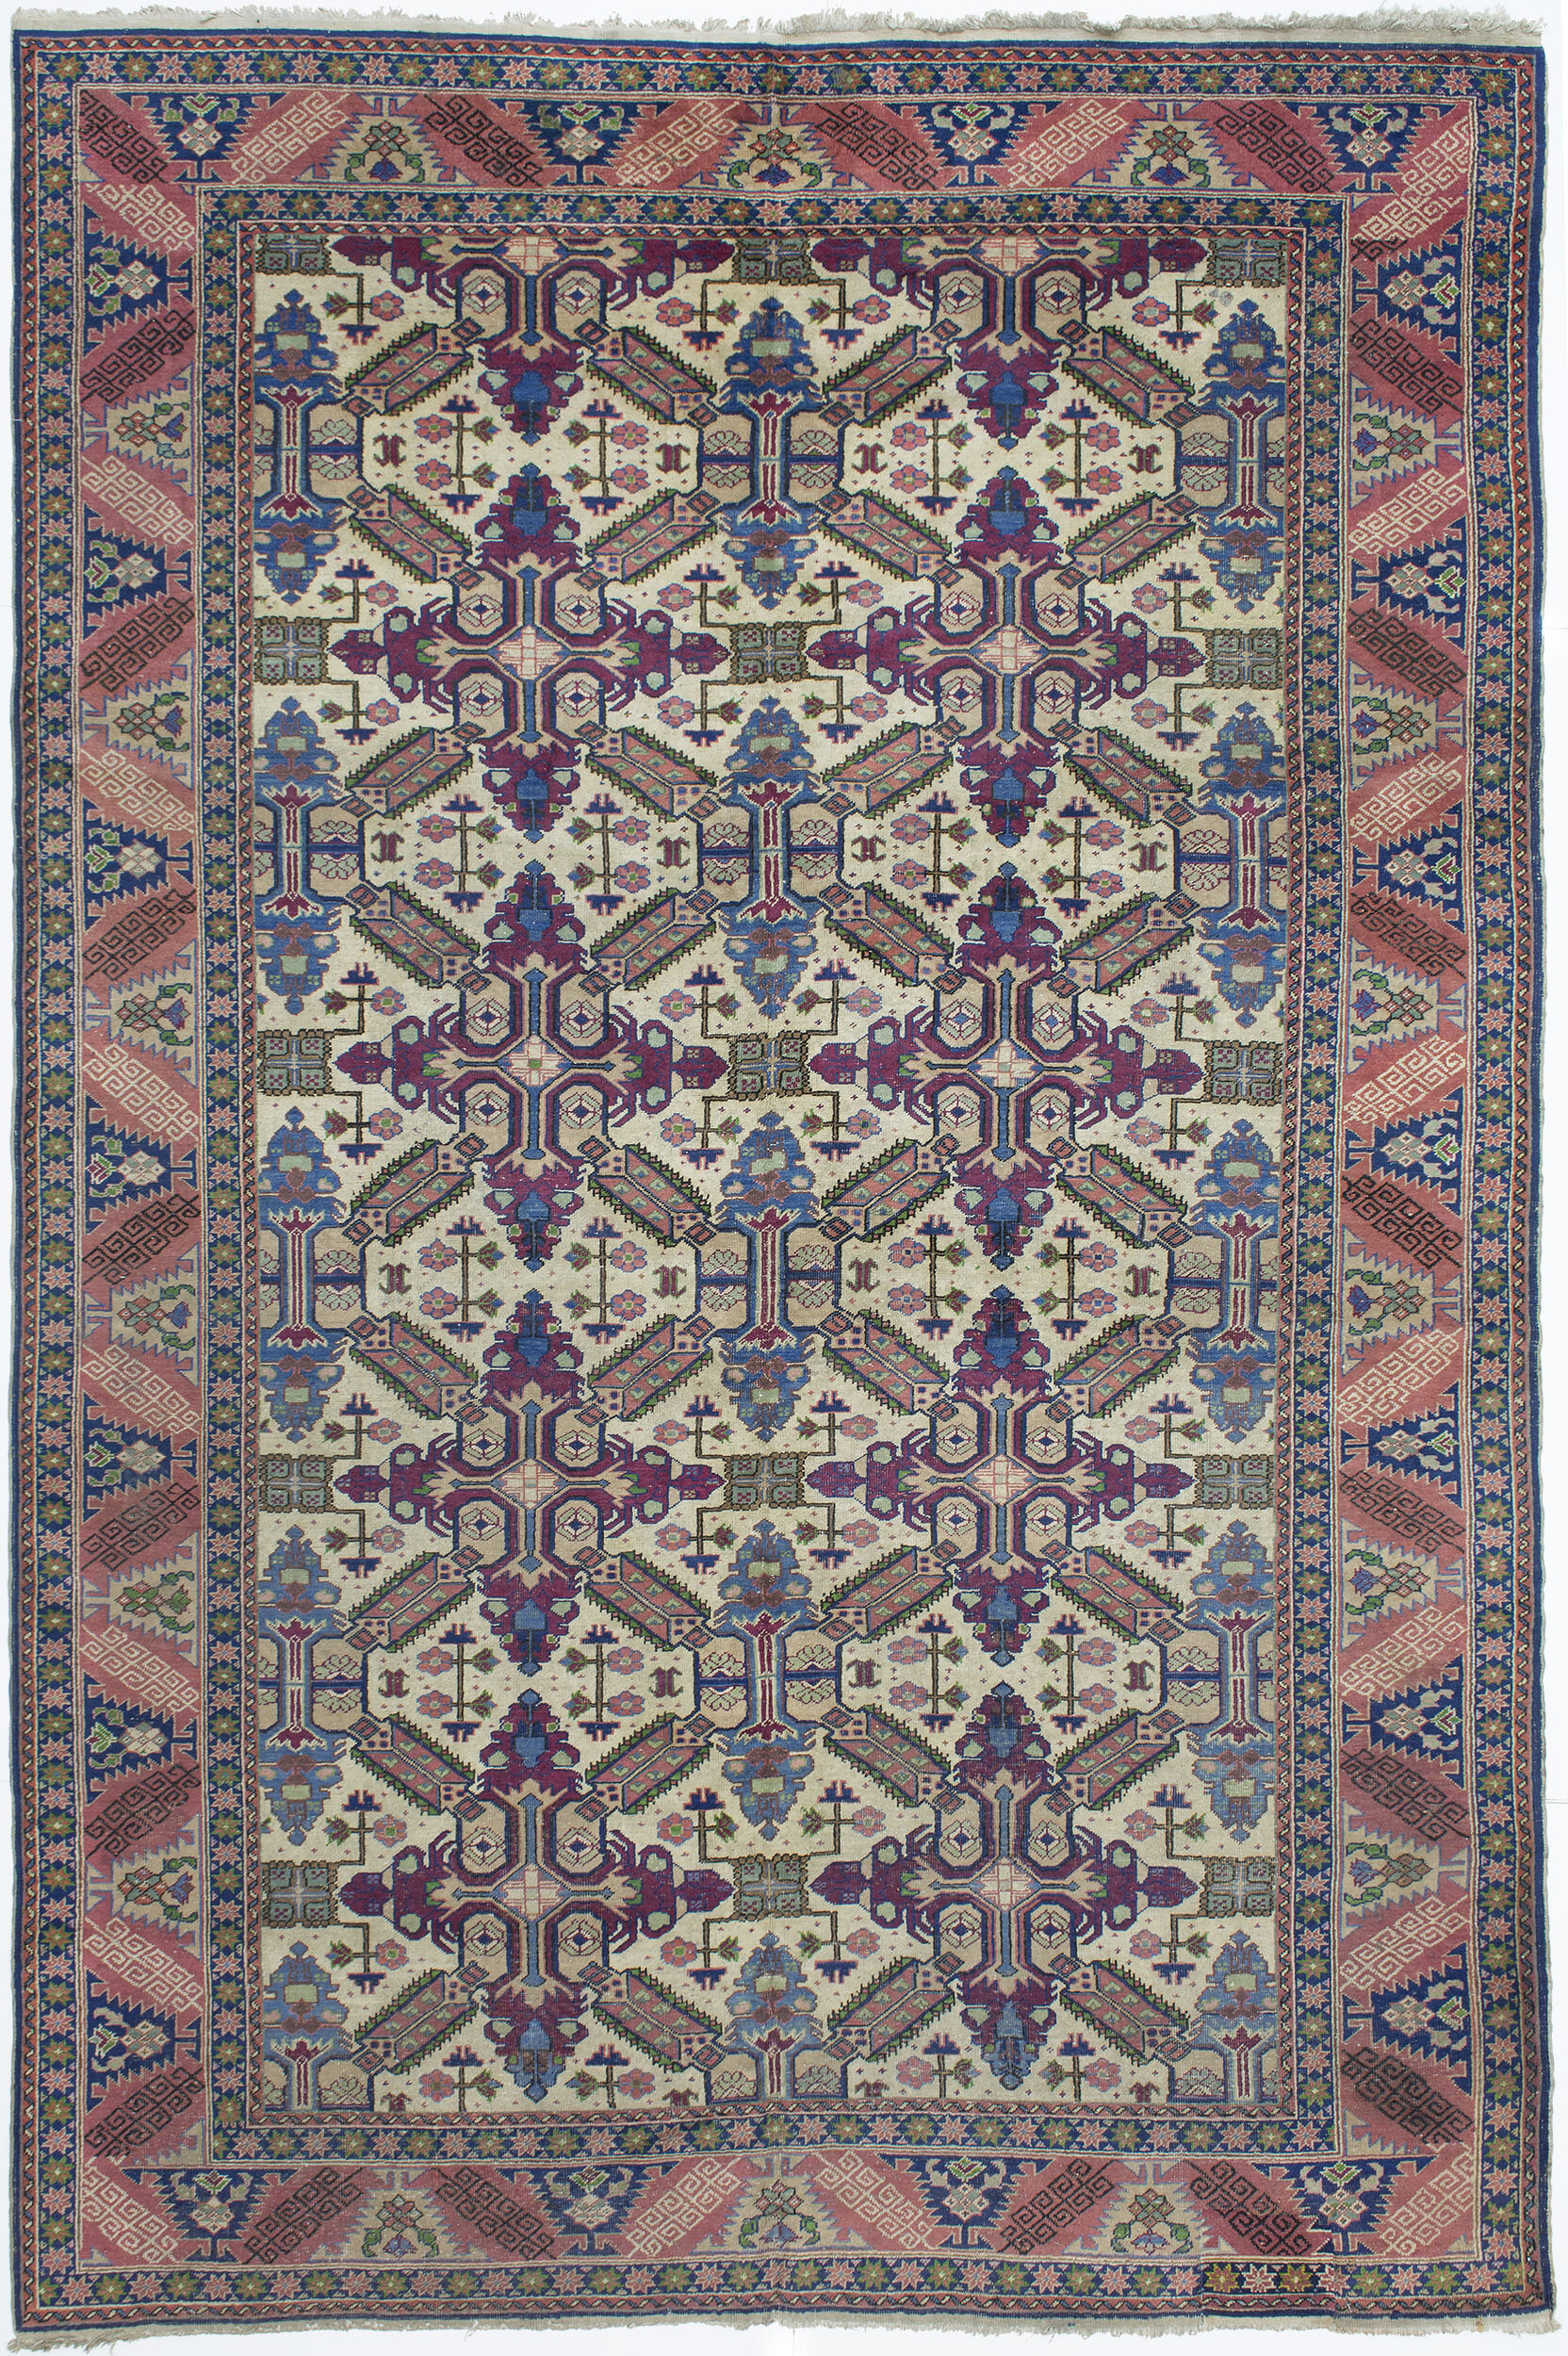 Kayseri Carpet 9' 7" x 6' 5" 